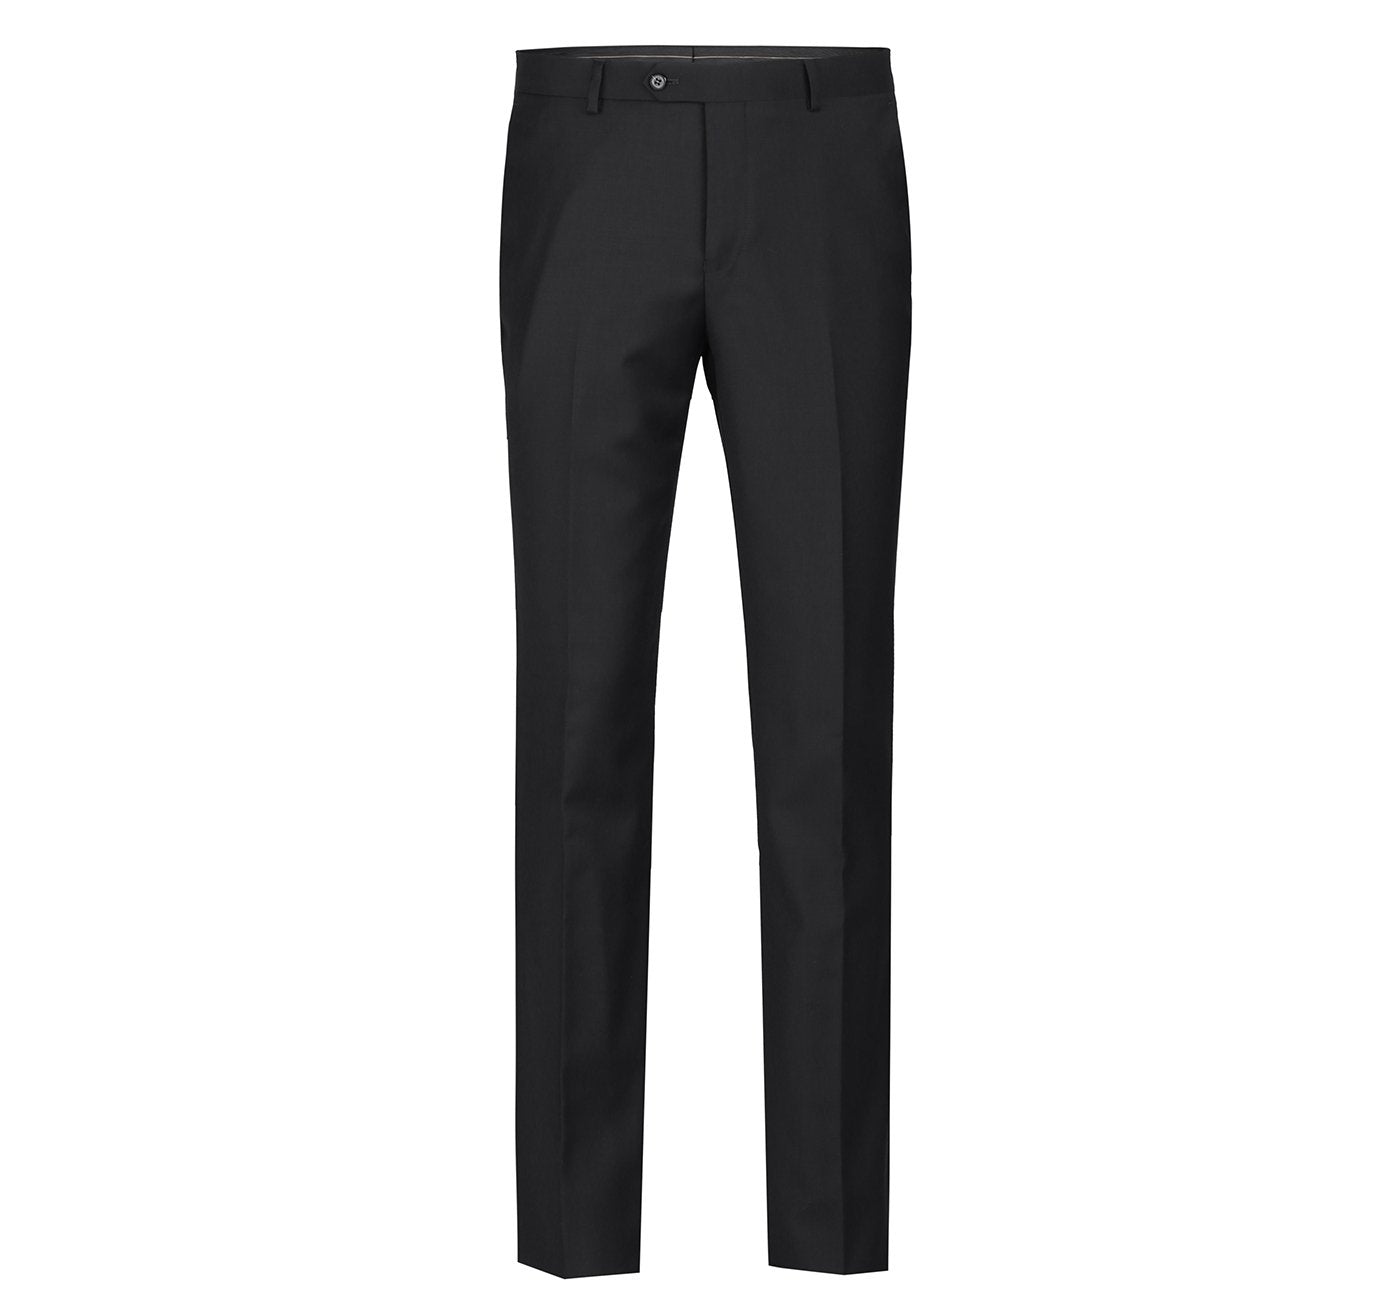 508-1 Men's Black Classic Fit Flat Front Wool Suit Pant